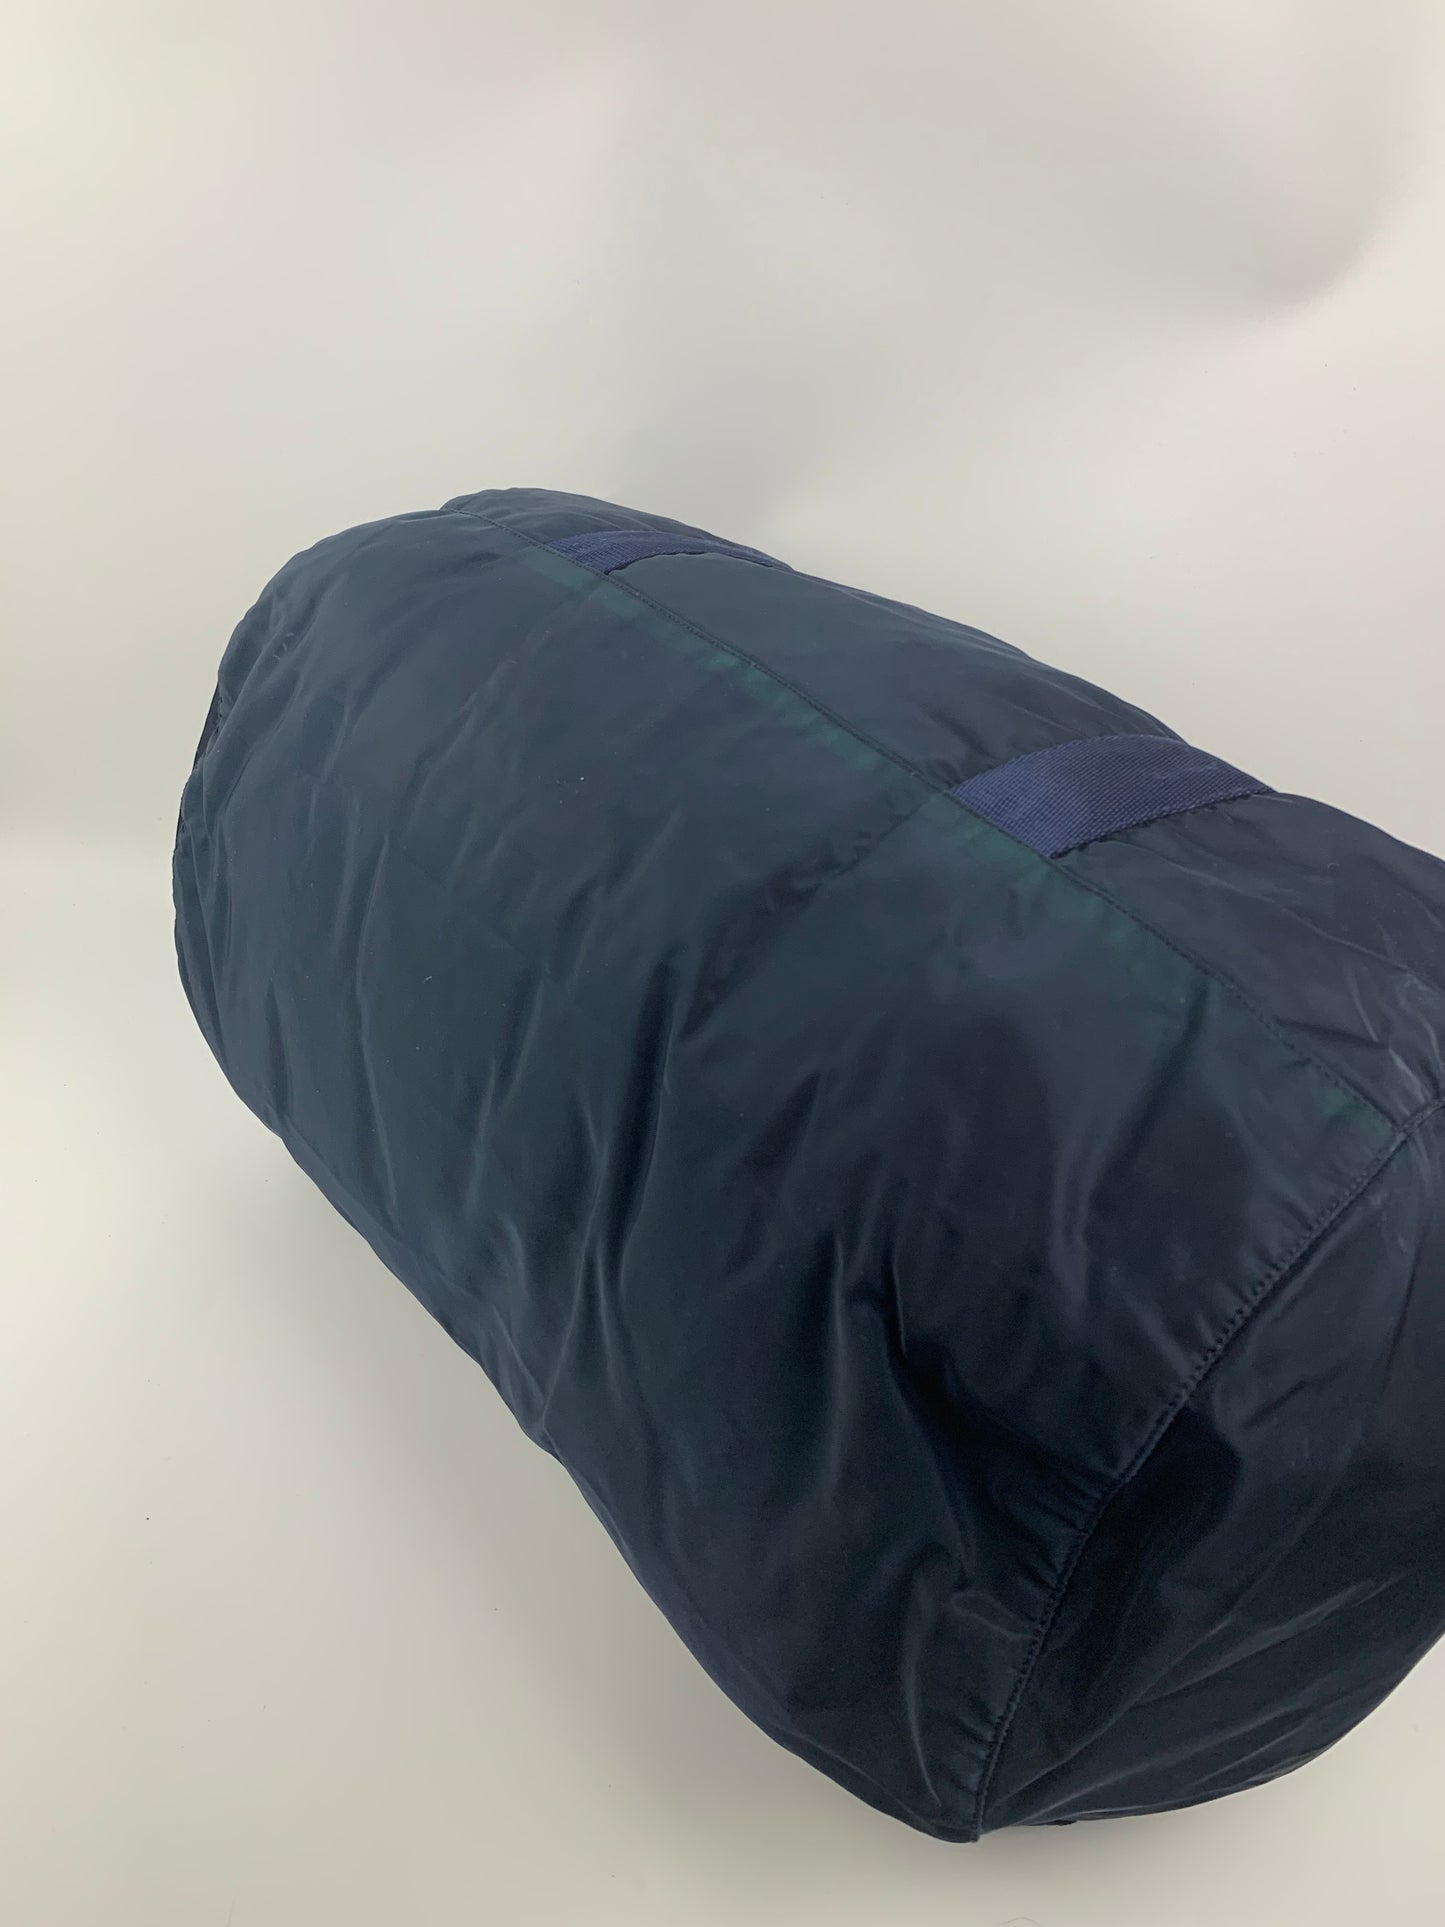 Prada Navy Blue Duffle Tessuto Shoulder Bag